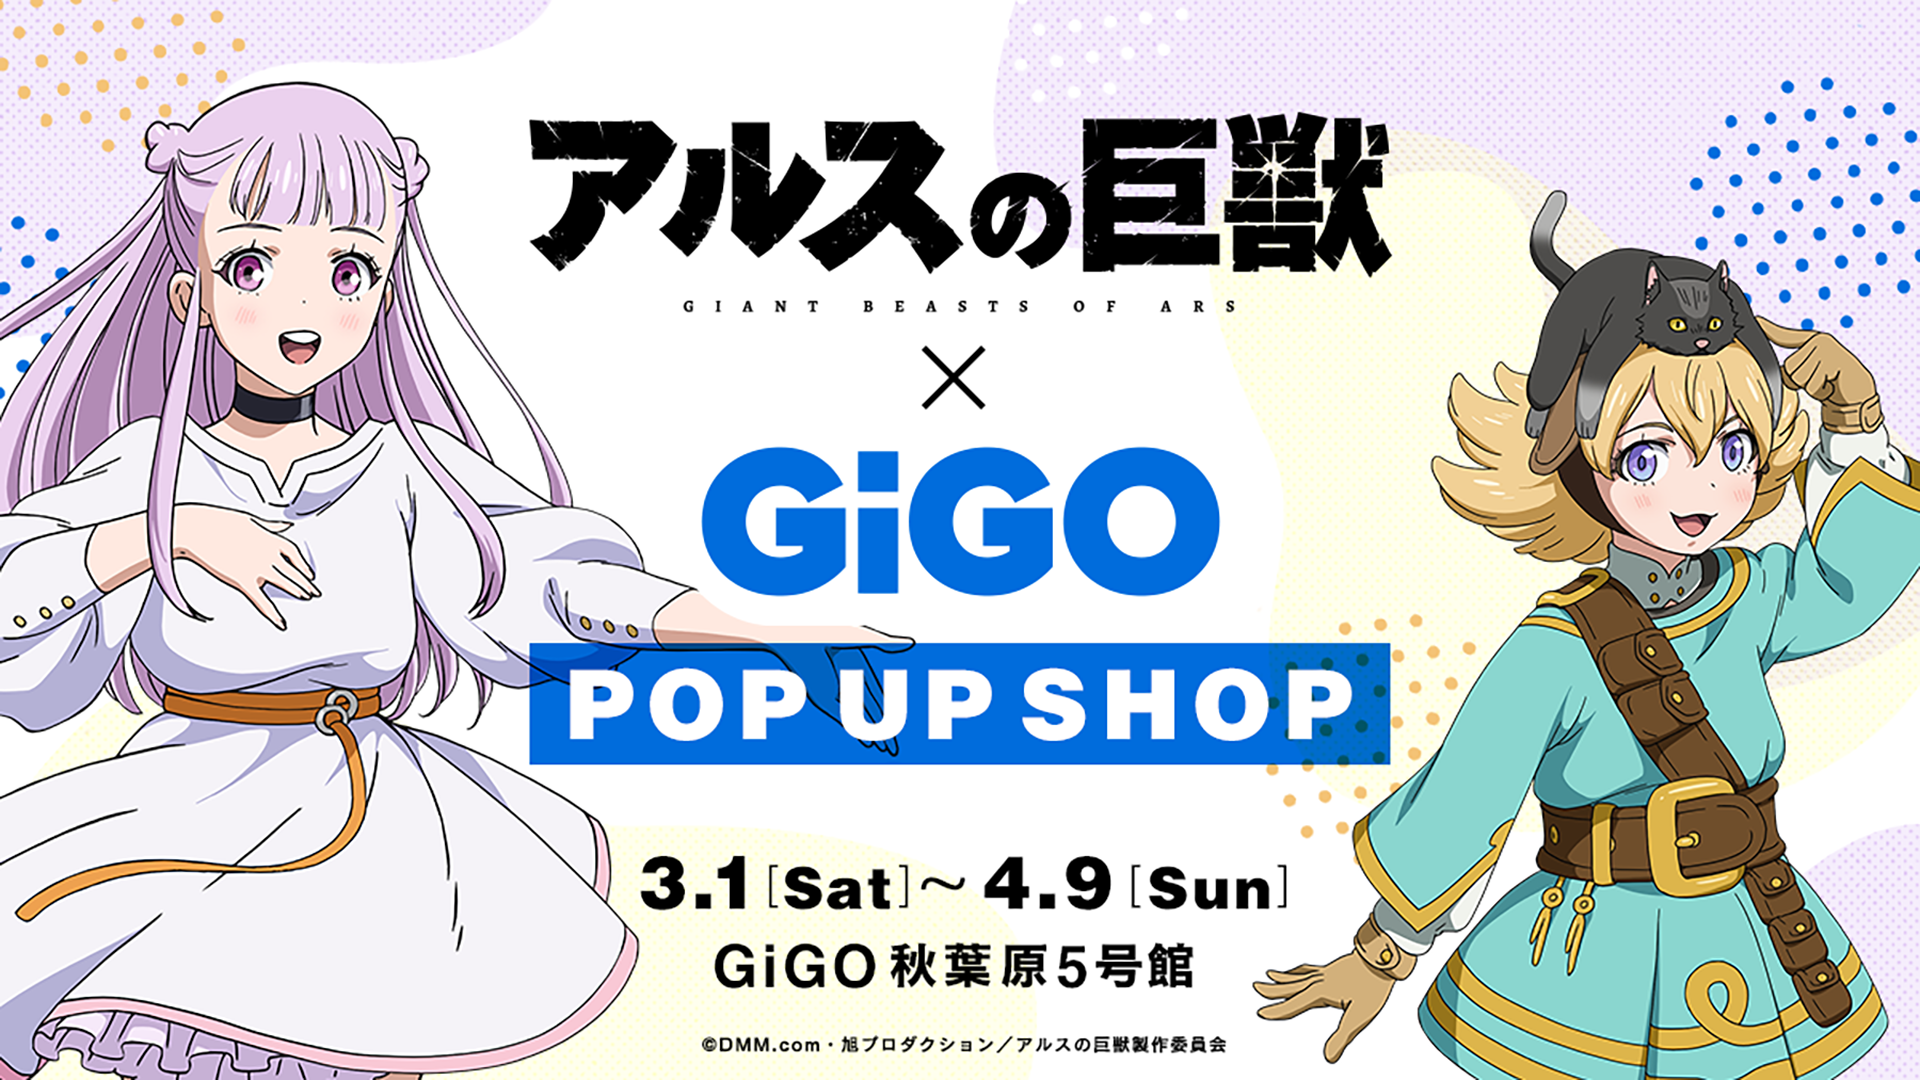 アルスの巨獣×GiGO POP UP SHOP